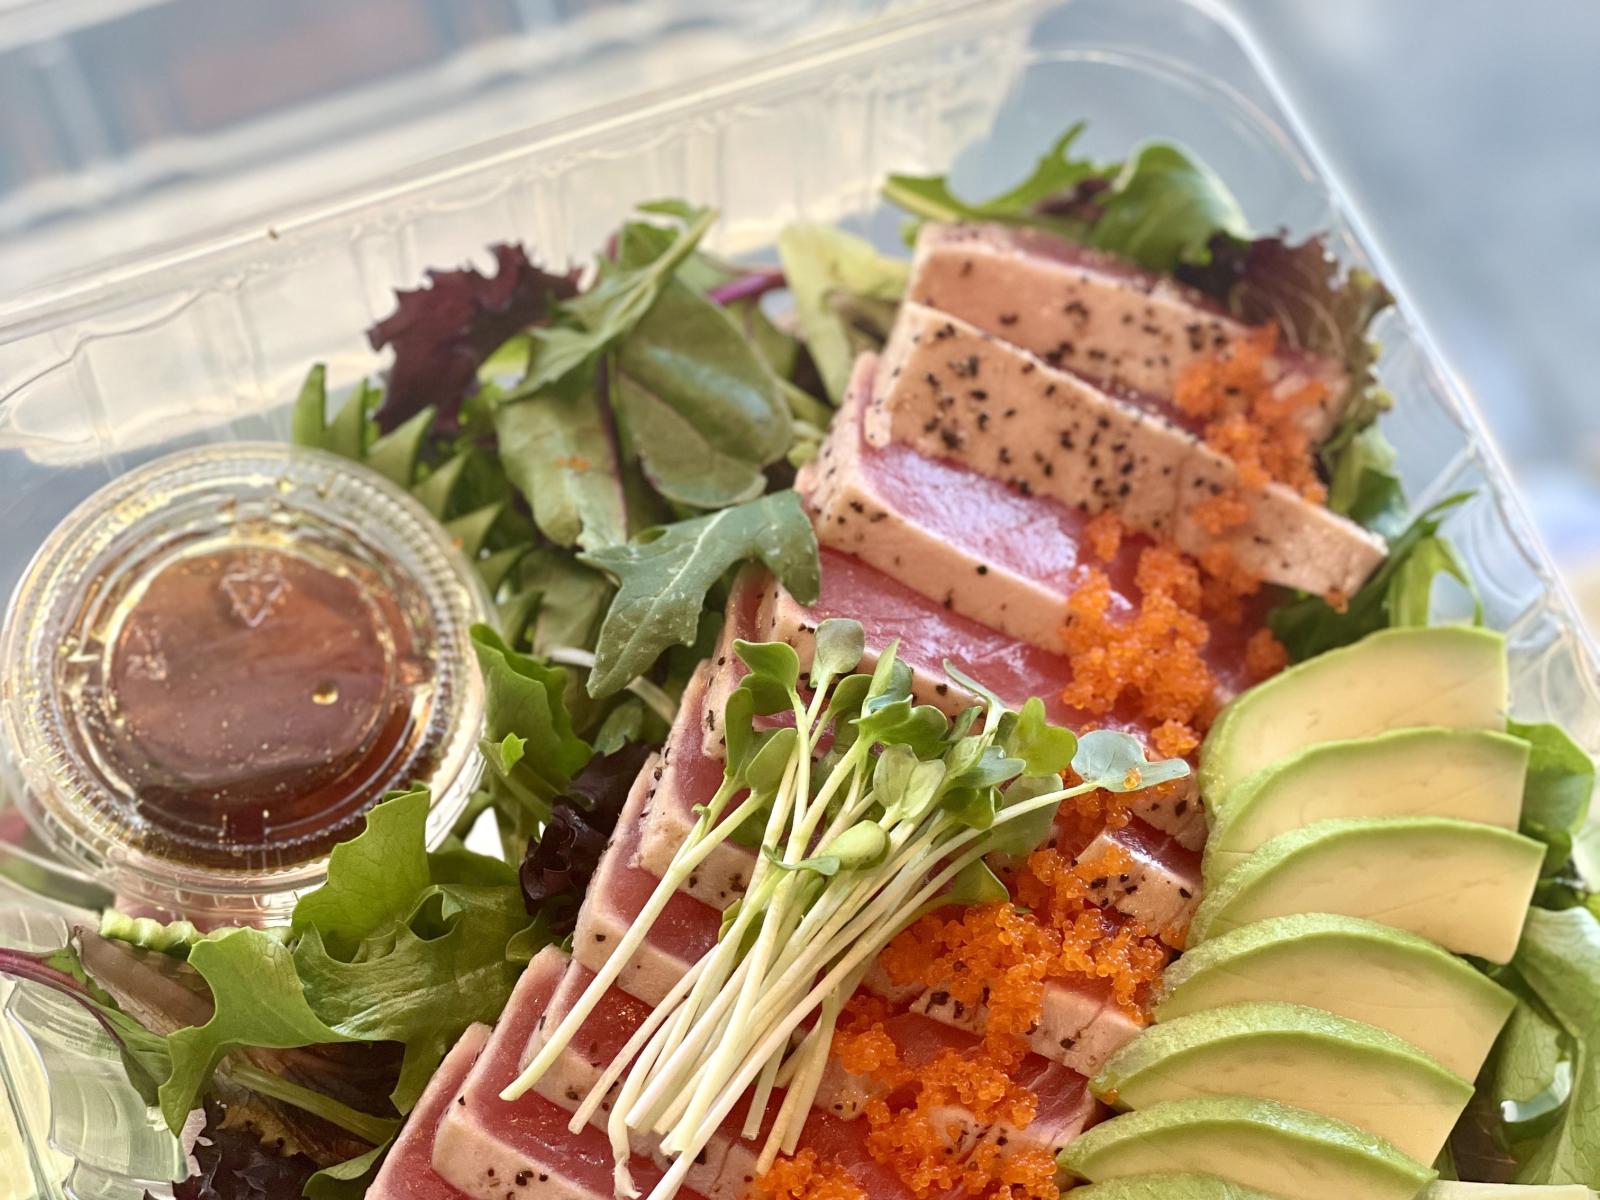 Main image for offer titled Tuna Tataki Salad